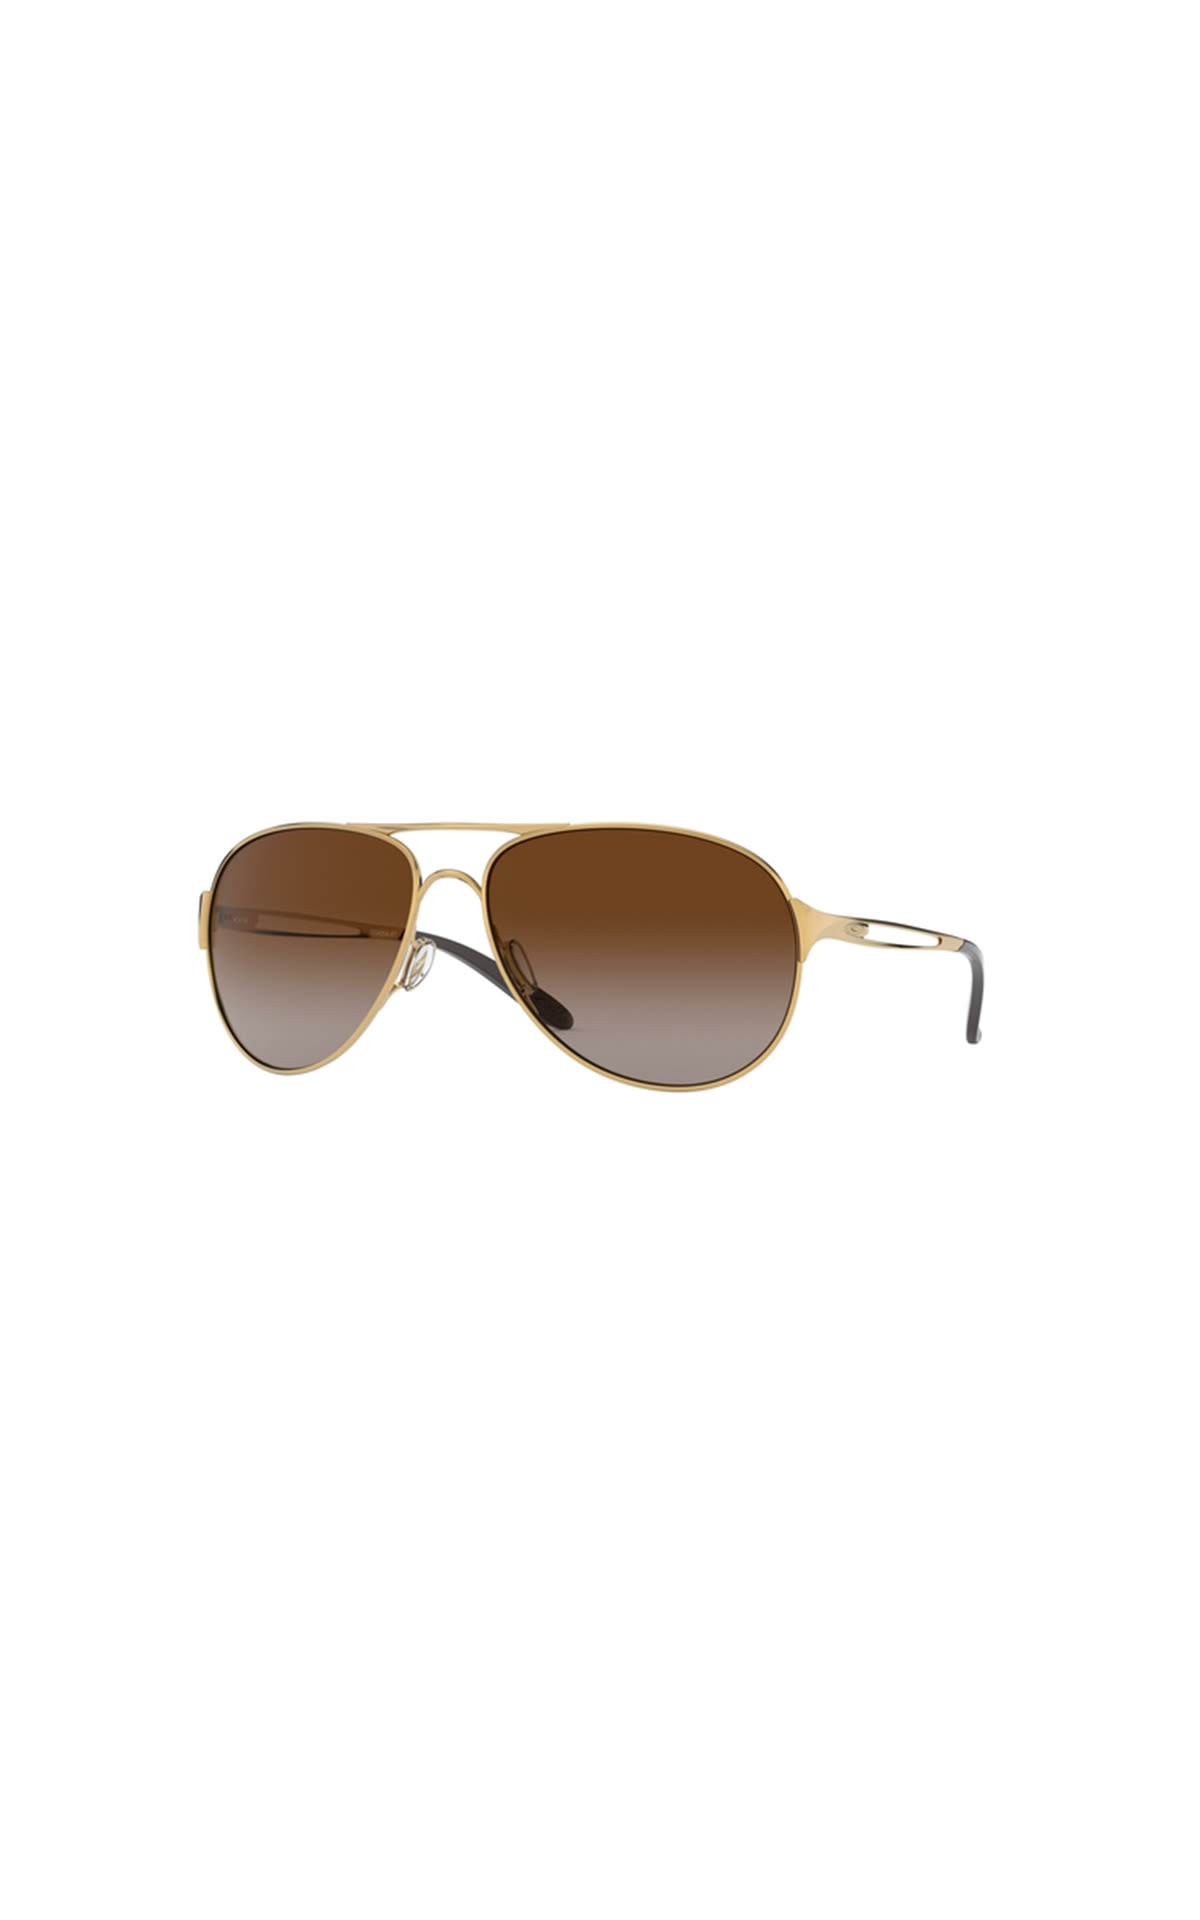 Sunglasses brown Oakley